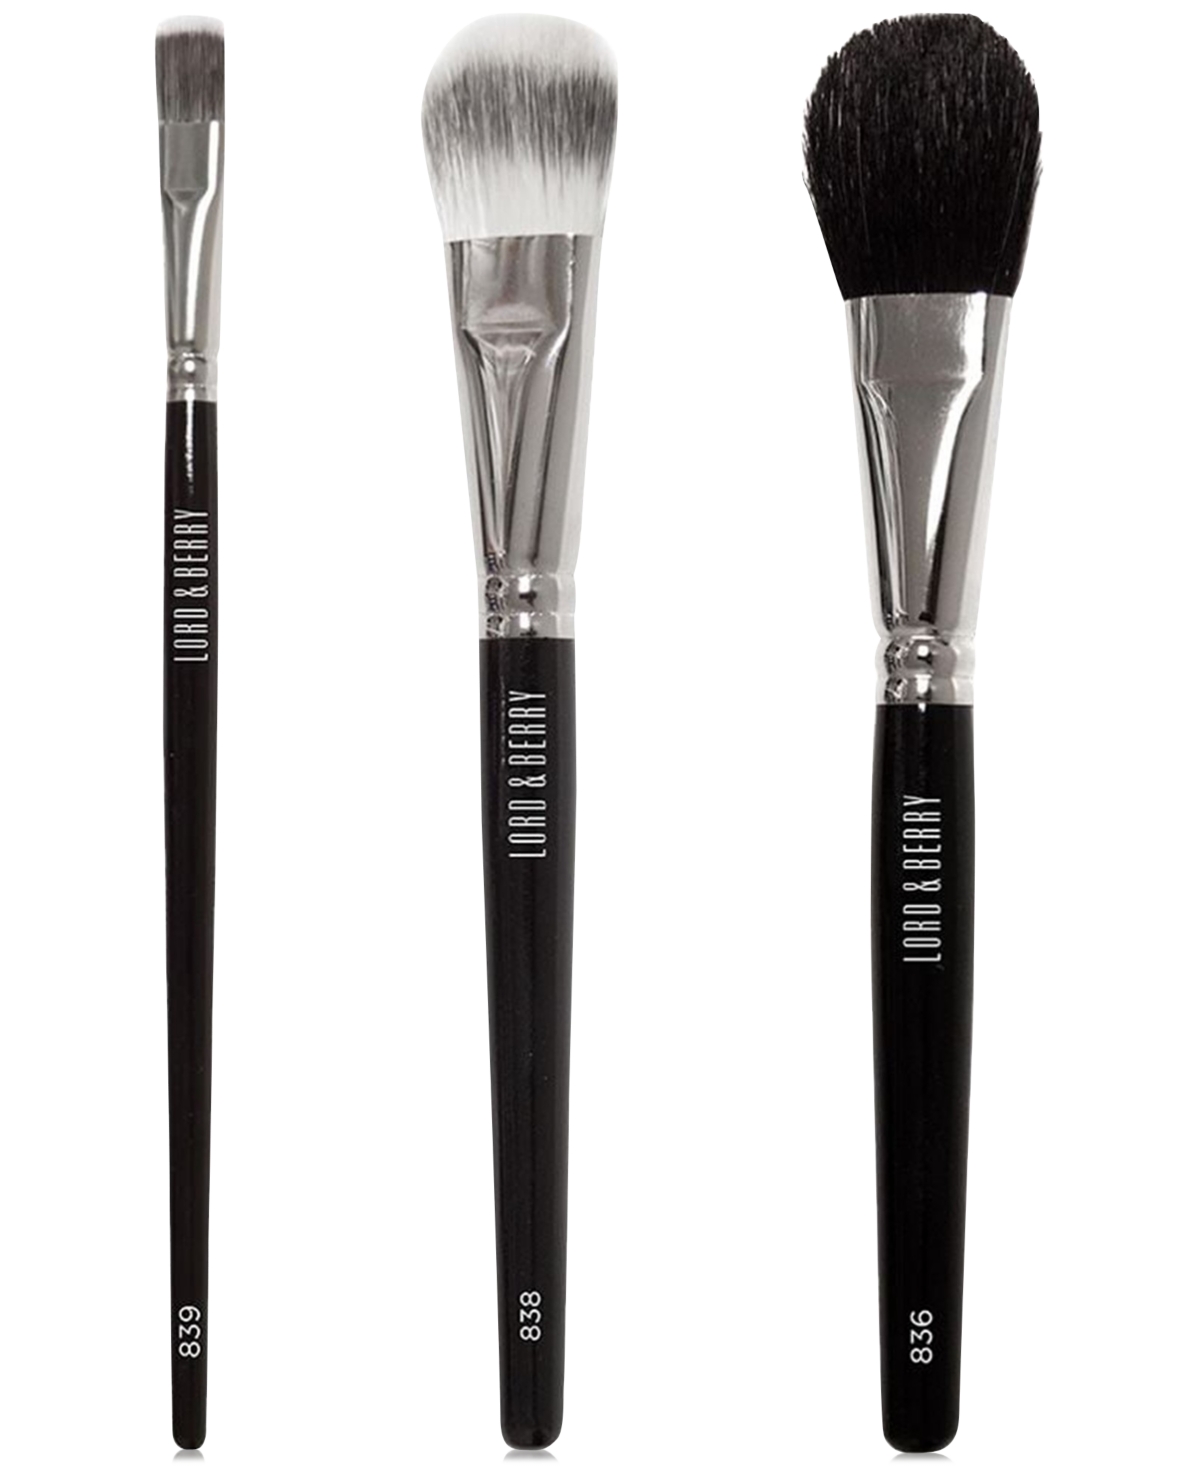 3-Piece Face Brush Set - Multi